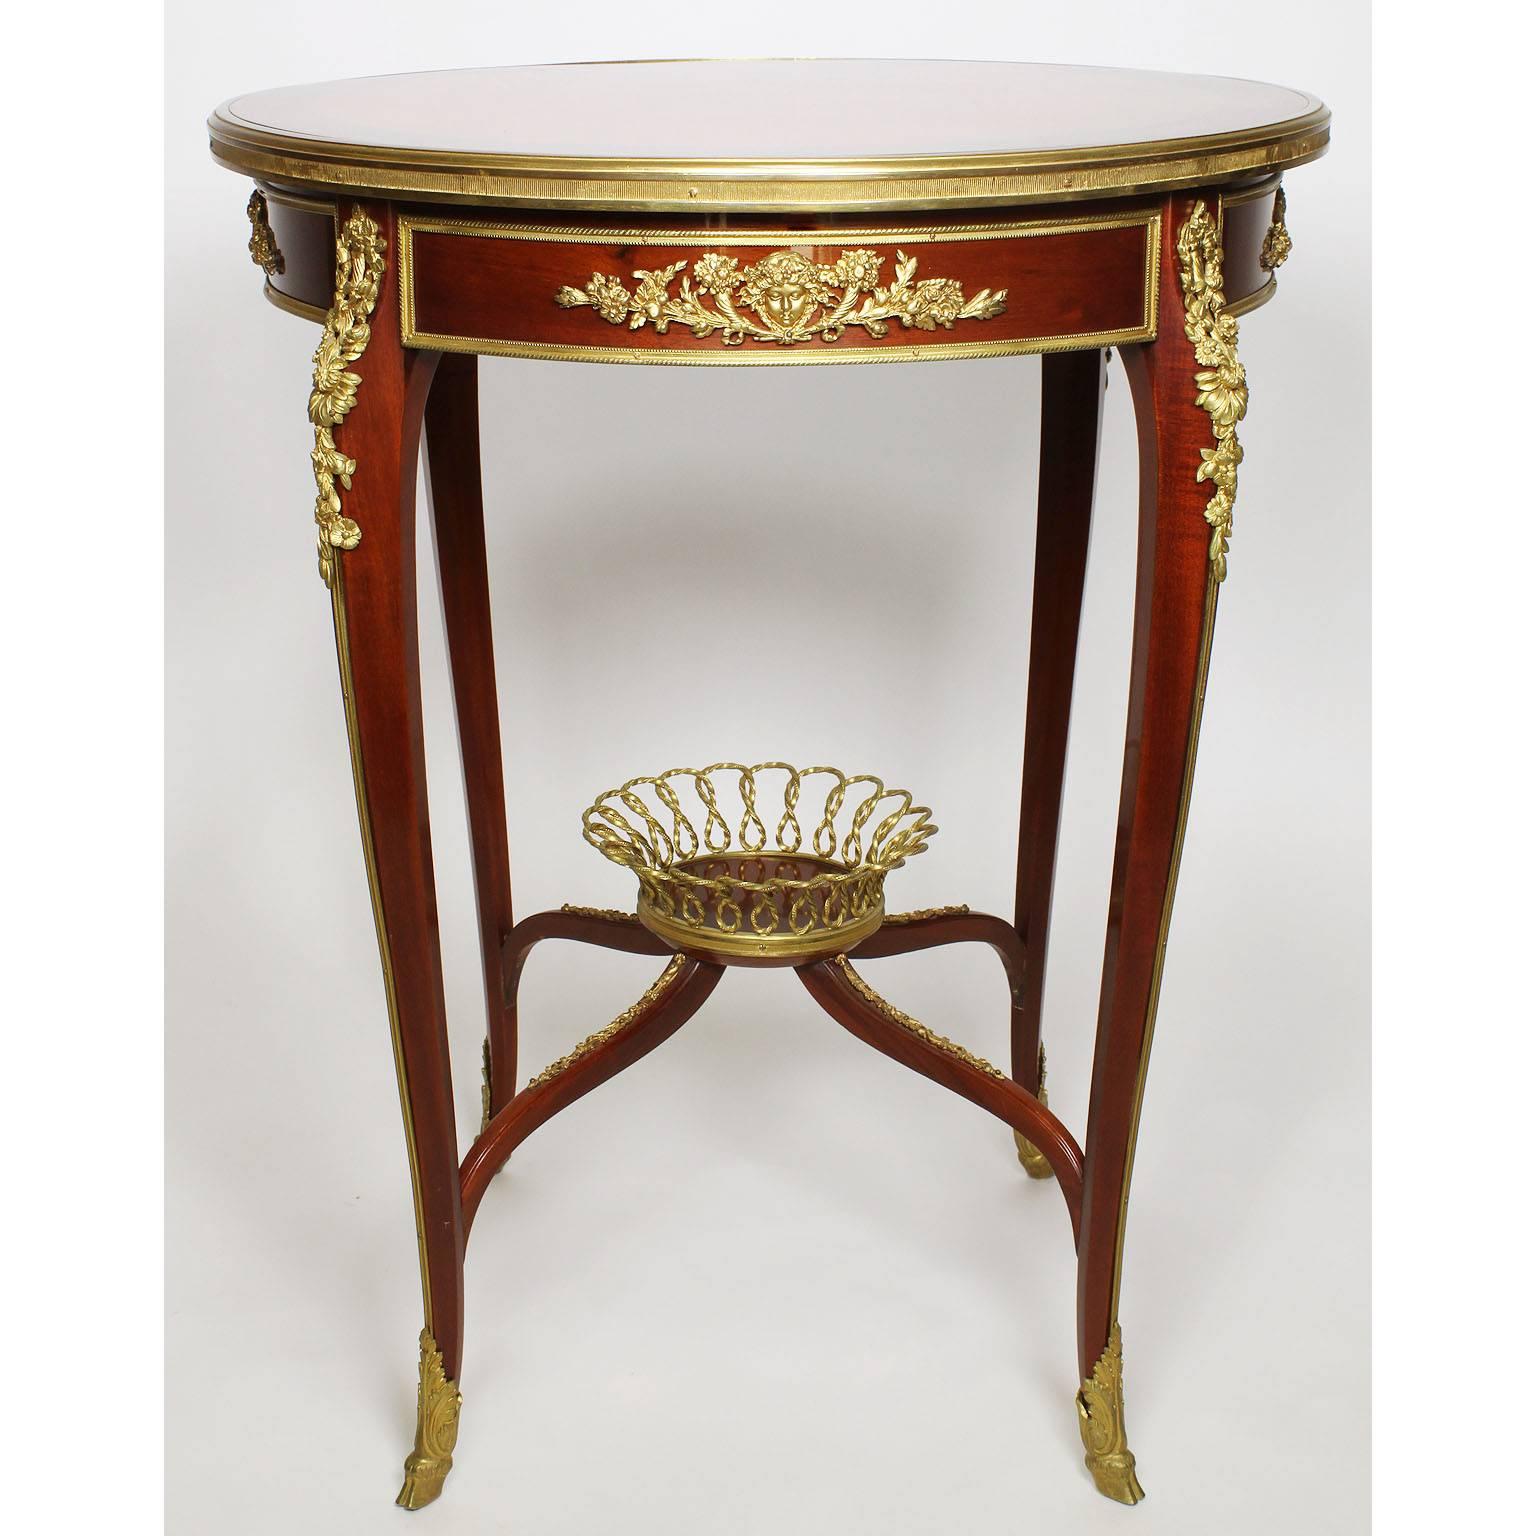 Table d'appoint de style Louis XV en acajou et marqueterie de bois de tulipier, montée sur bronze doré. Le plateau circulaire est incrusté d'une marqueterie de motifs floraux et d'une parqueterie symétrique. Le tablier est centré de montures en